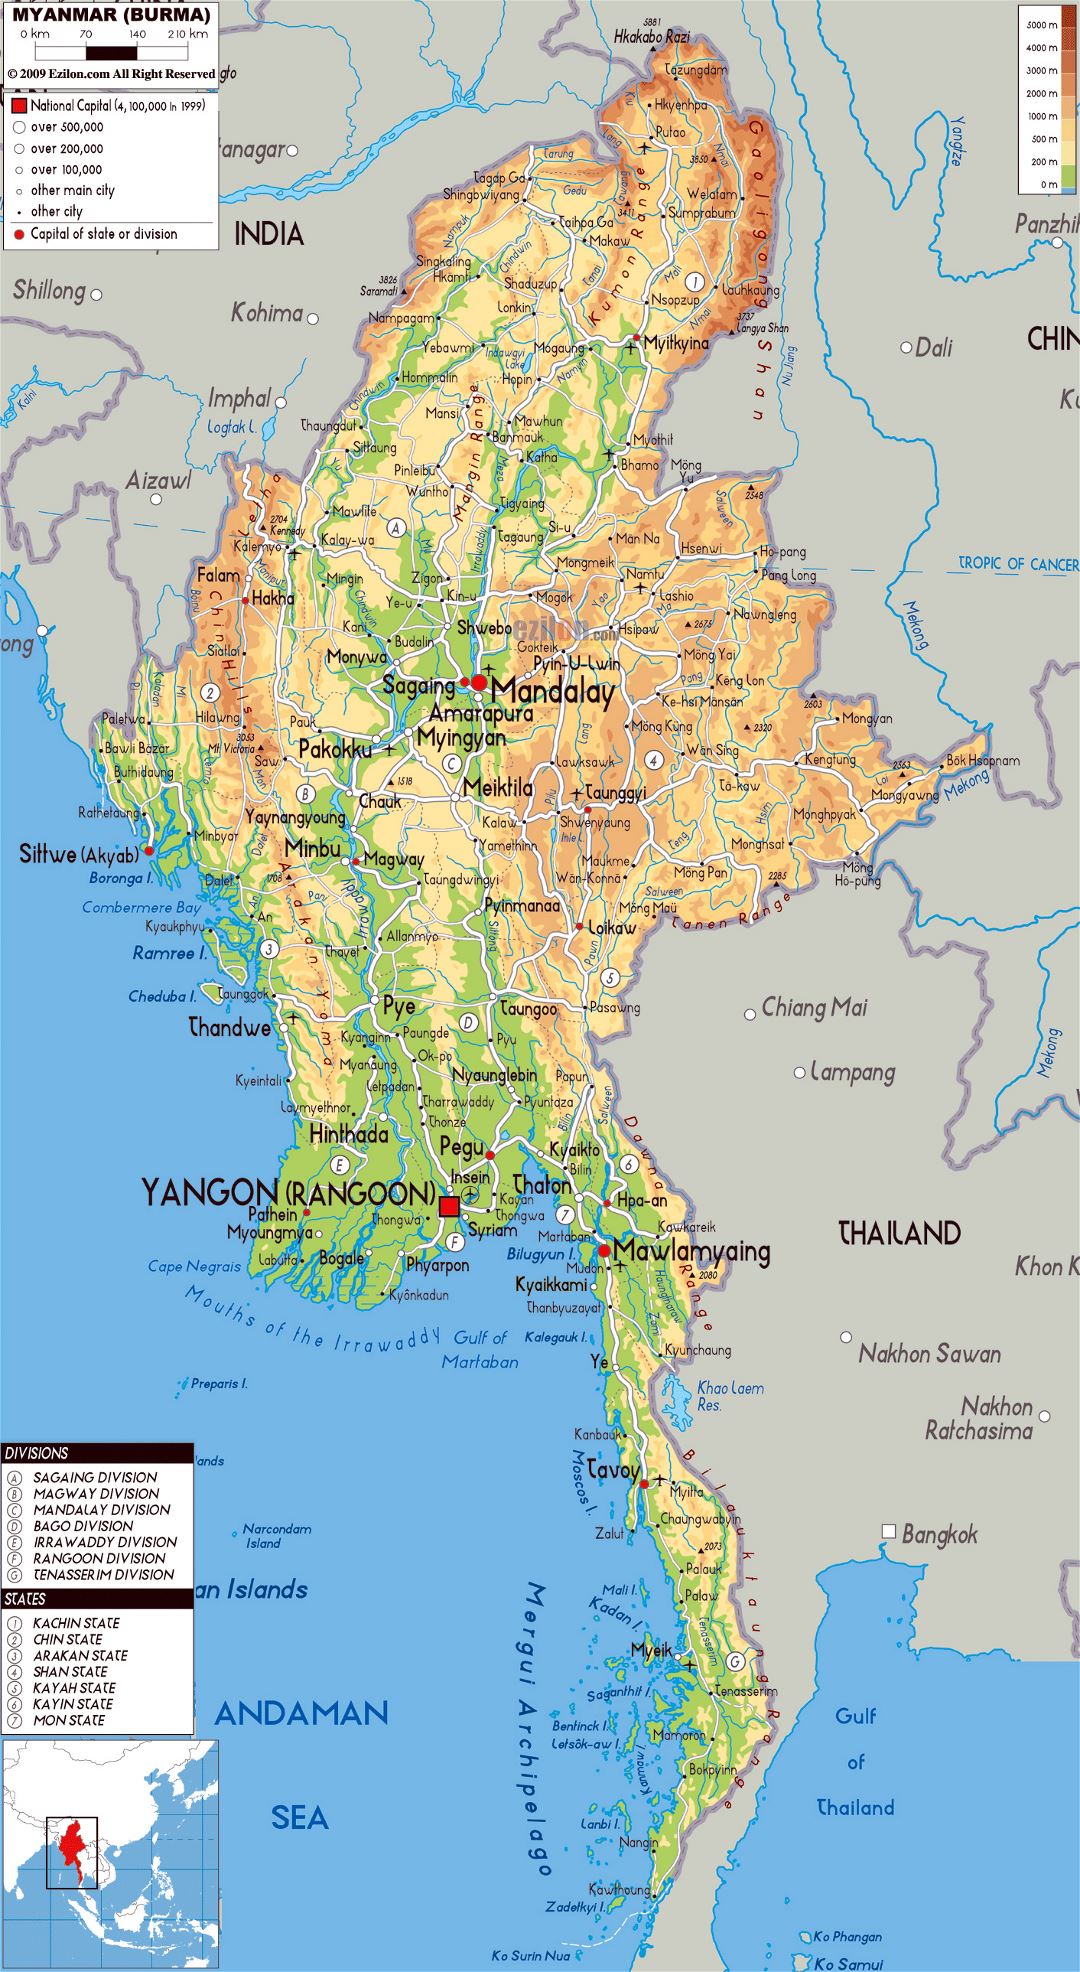 Grande mapa físico de Myanmar con carreteras, ciudades y aeropuertos